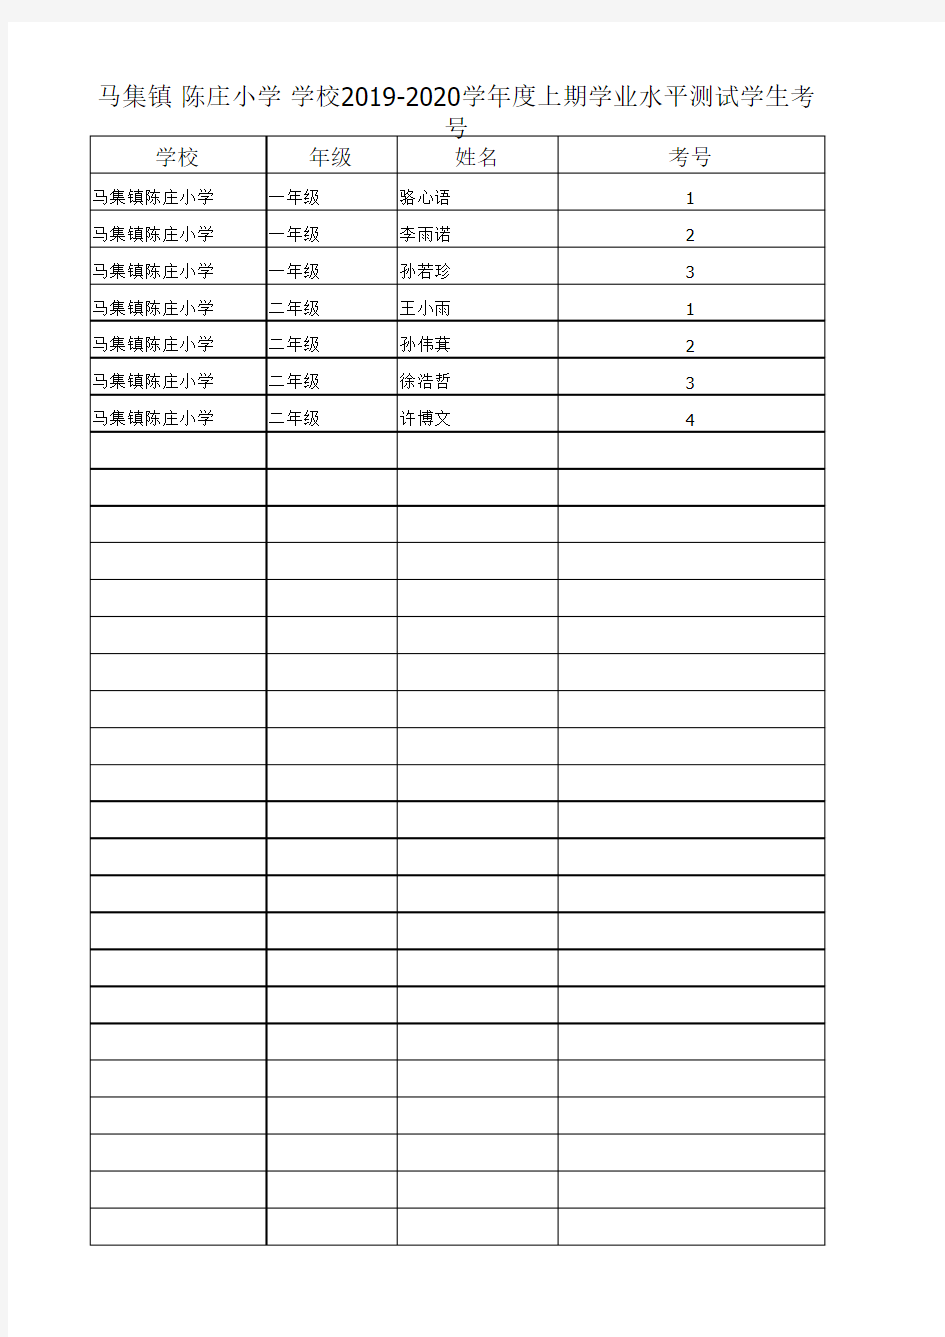 陈庄小学 2019-2020上期学生考号(1)